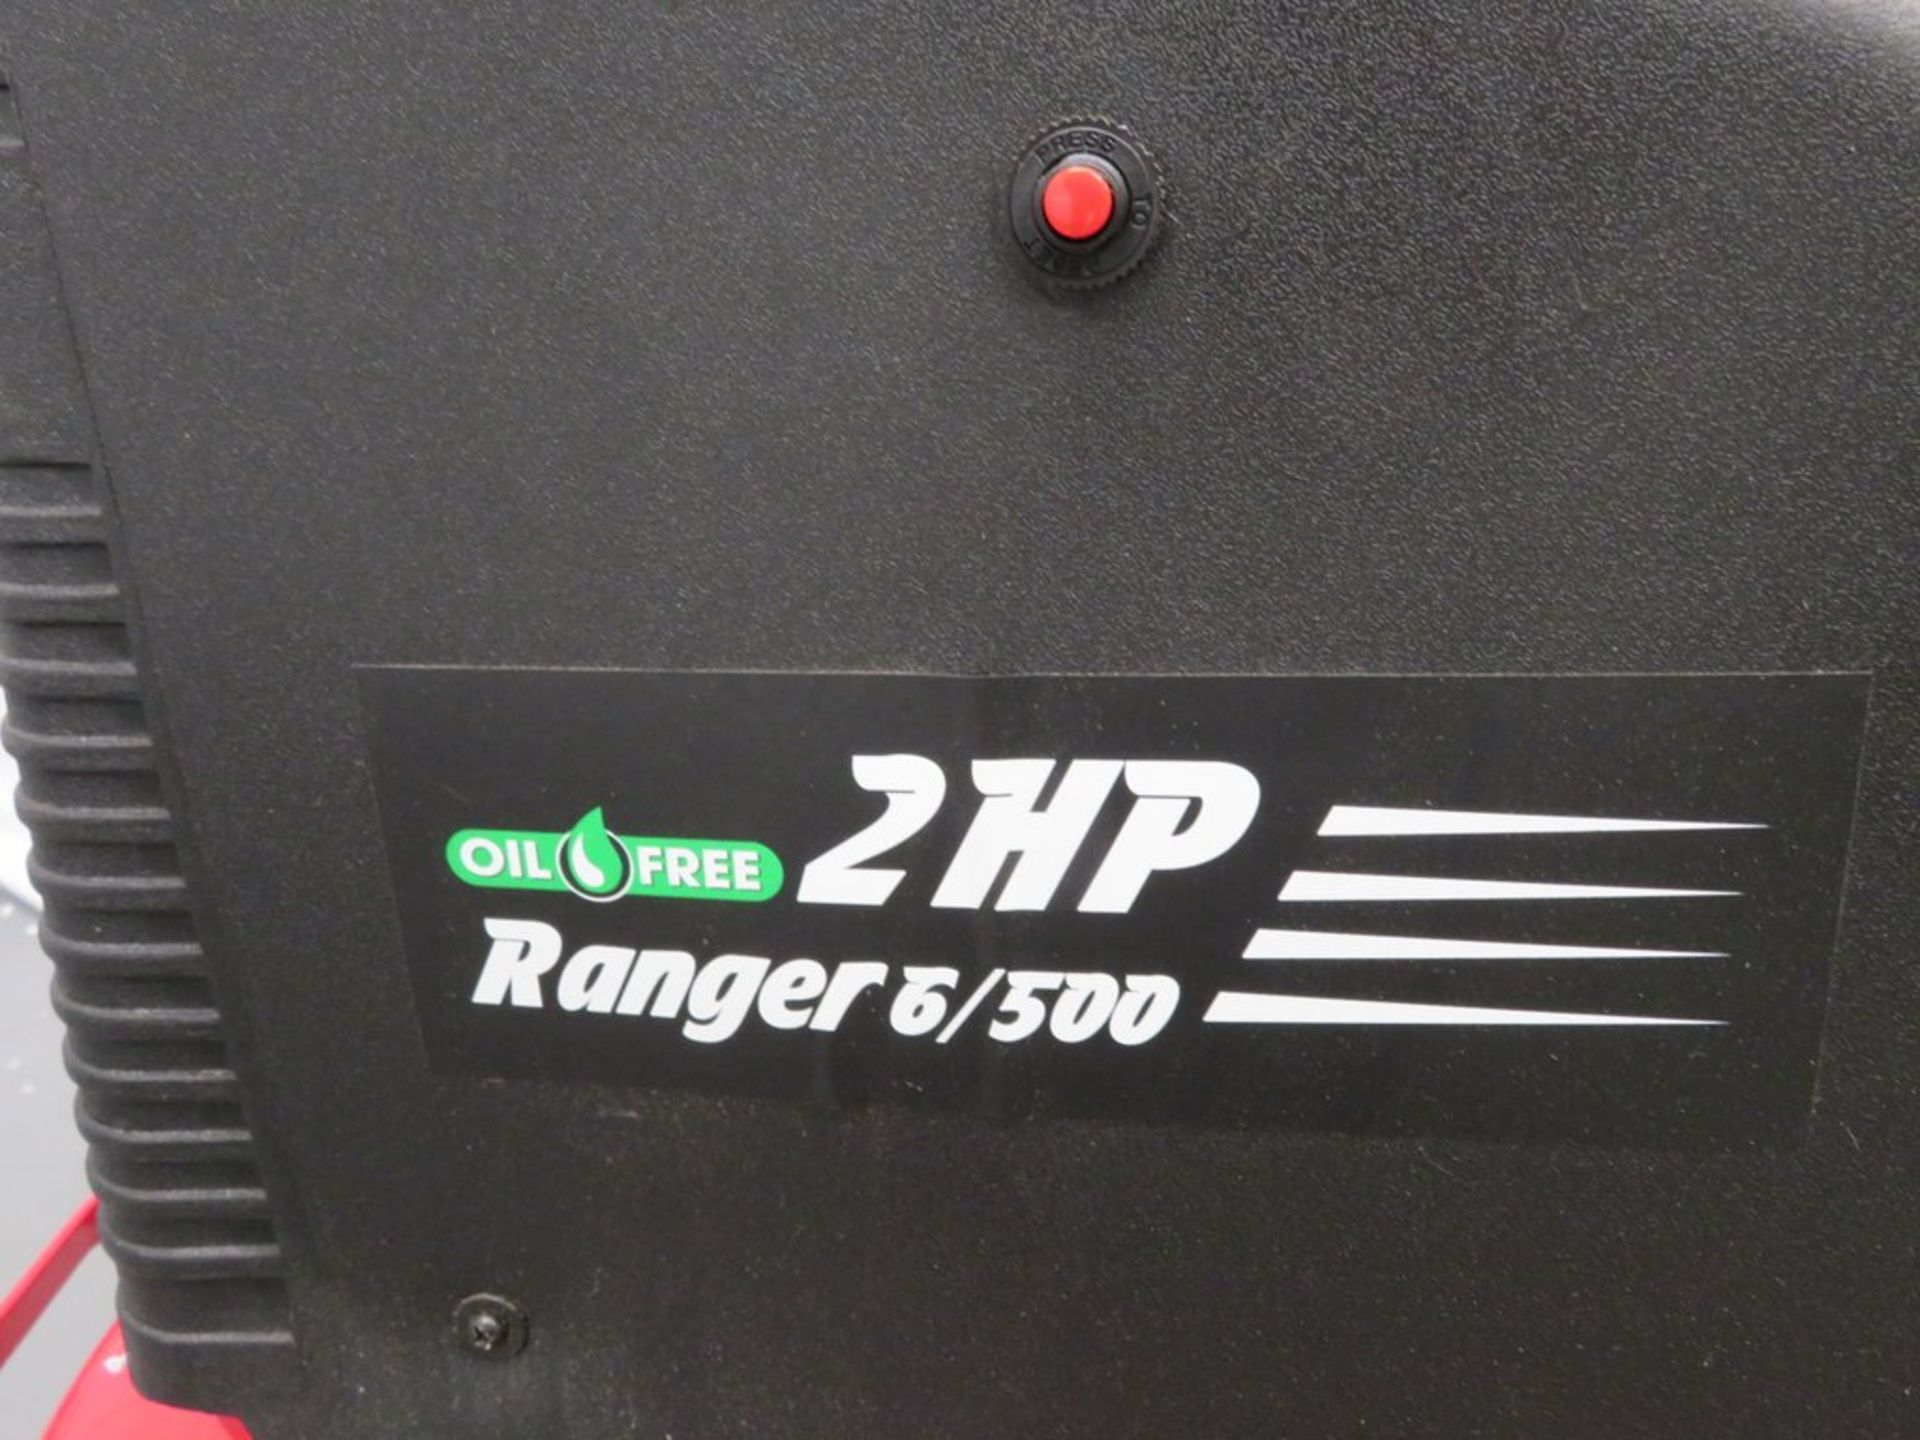 Clarke 7cfm 50Litre 2HP Oil Free Air Compressor. Model: Ranger 6/500. 230v. - Image 4 of 11